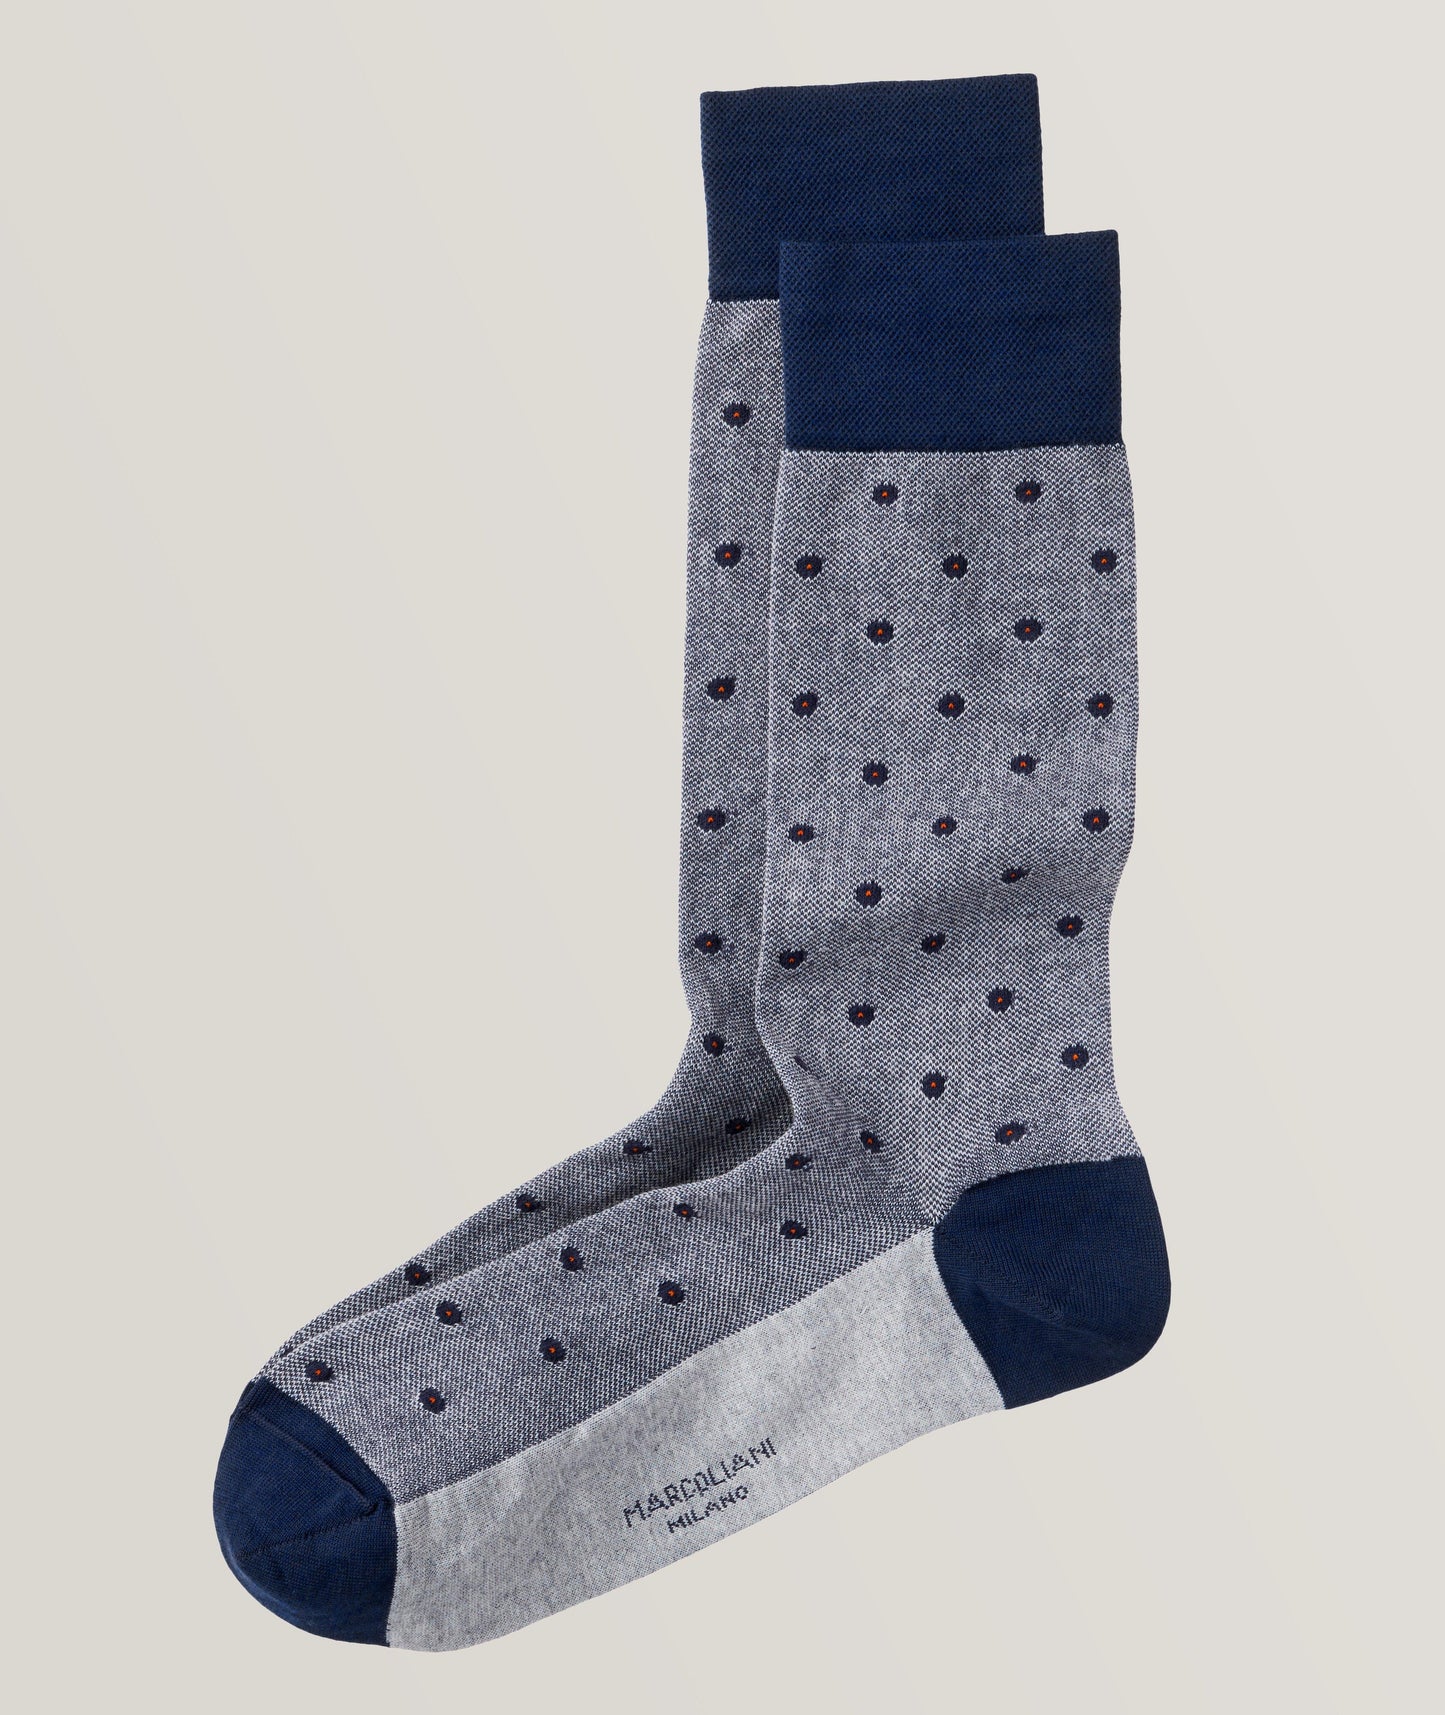 Marcoliani - Chaussettes en coton piqué classique à pois - Gris/Bleu